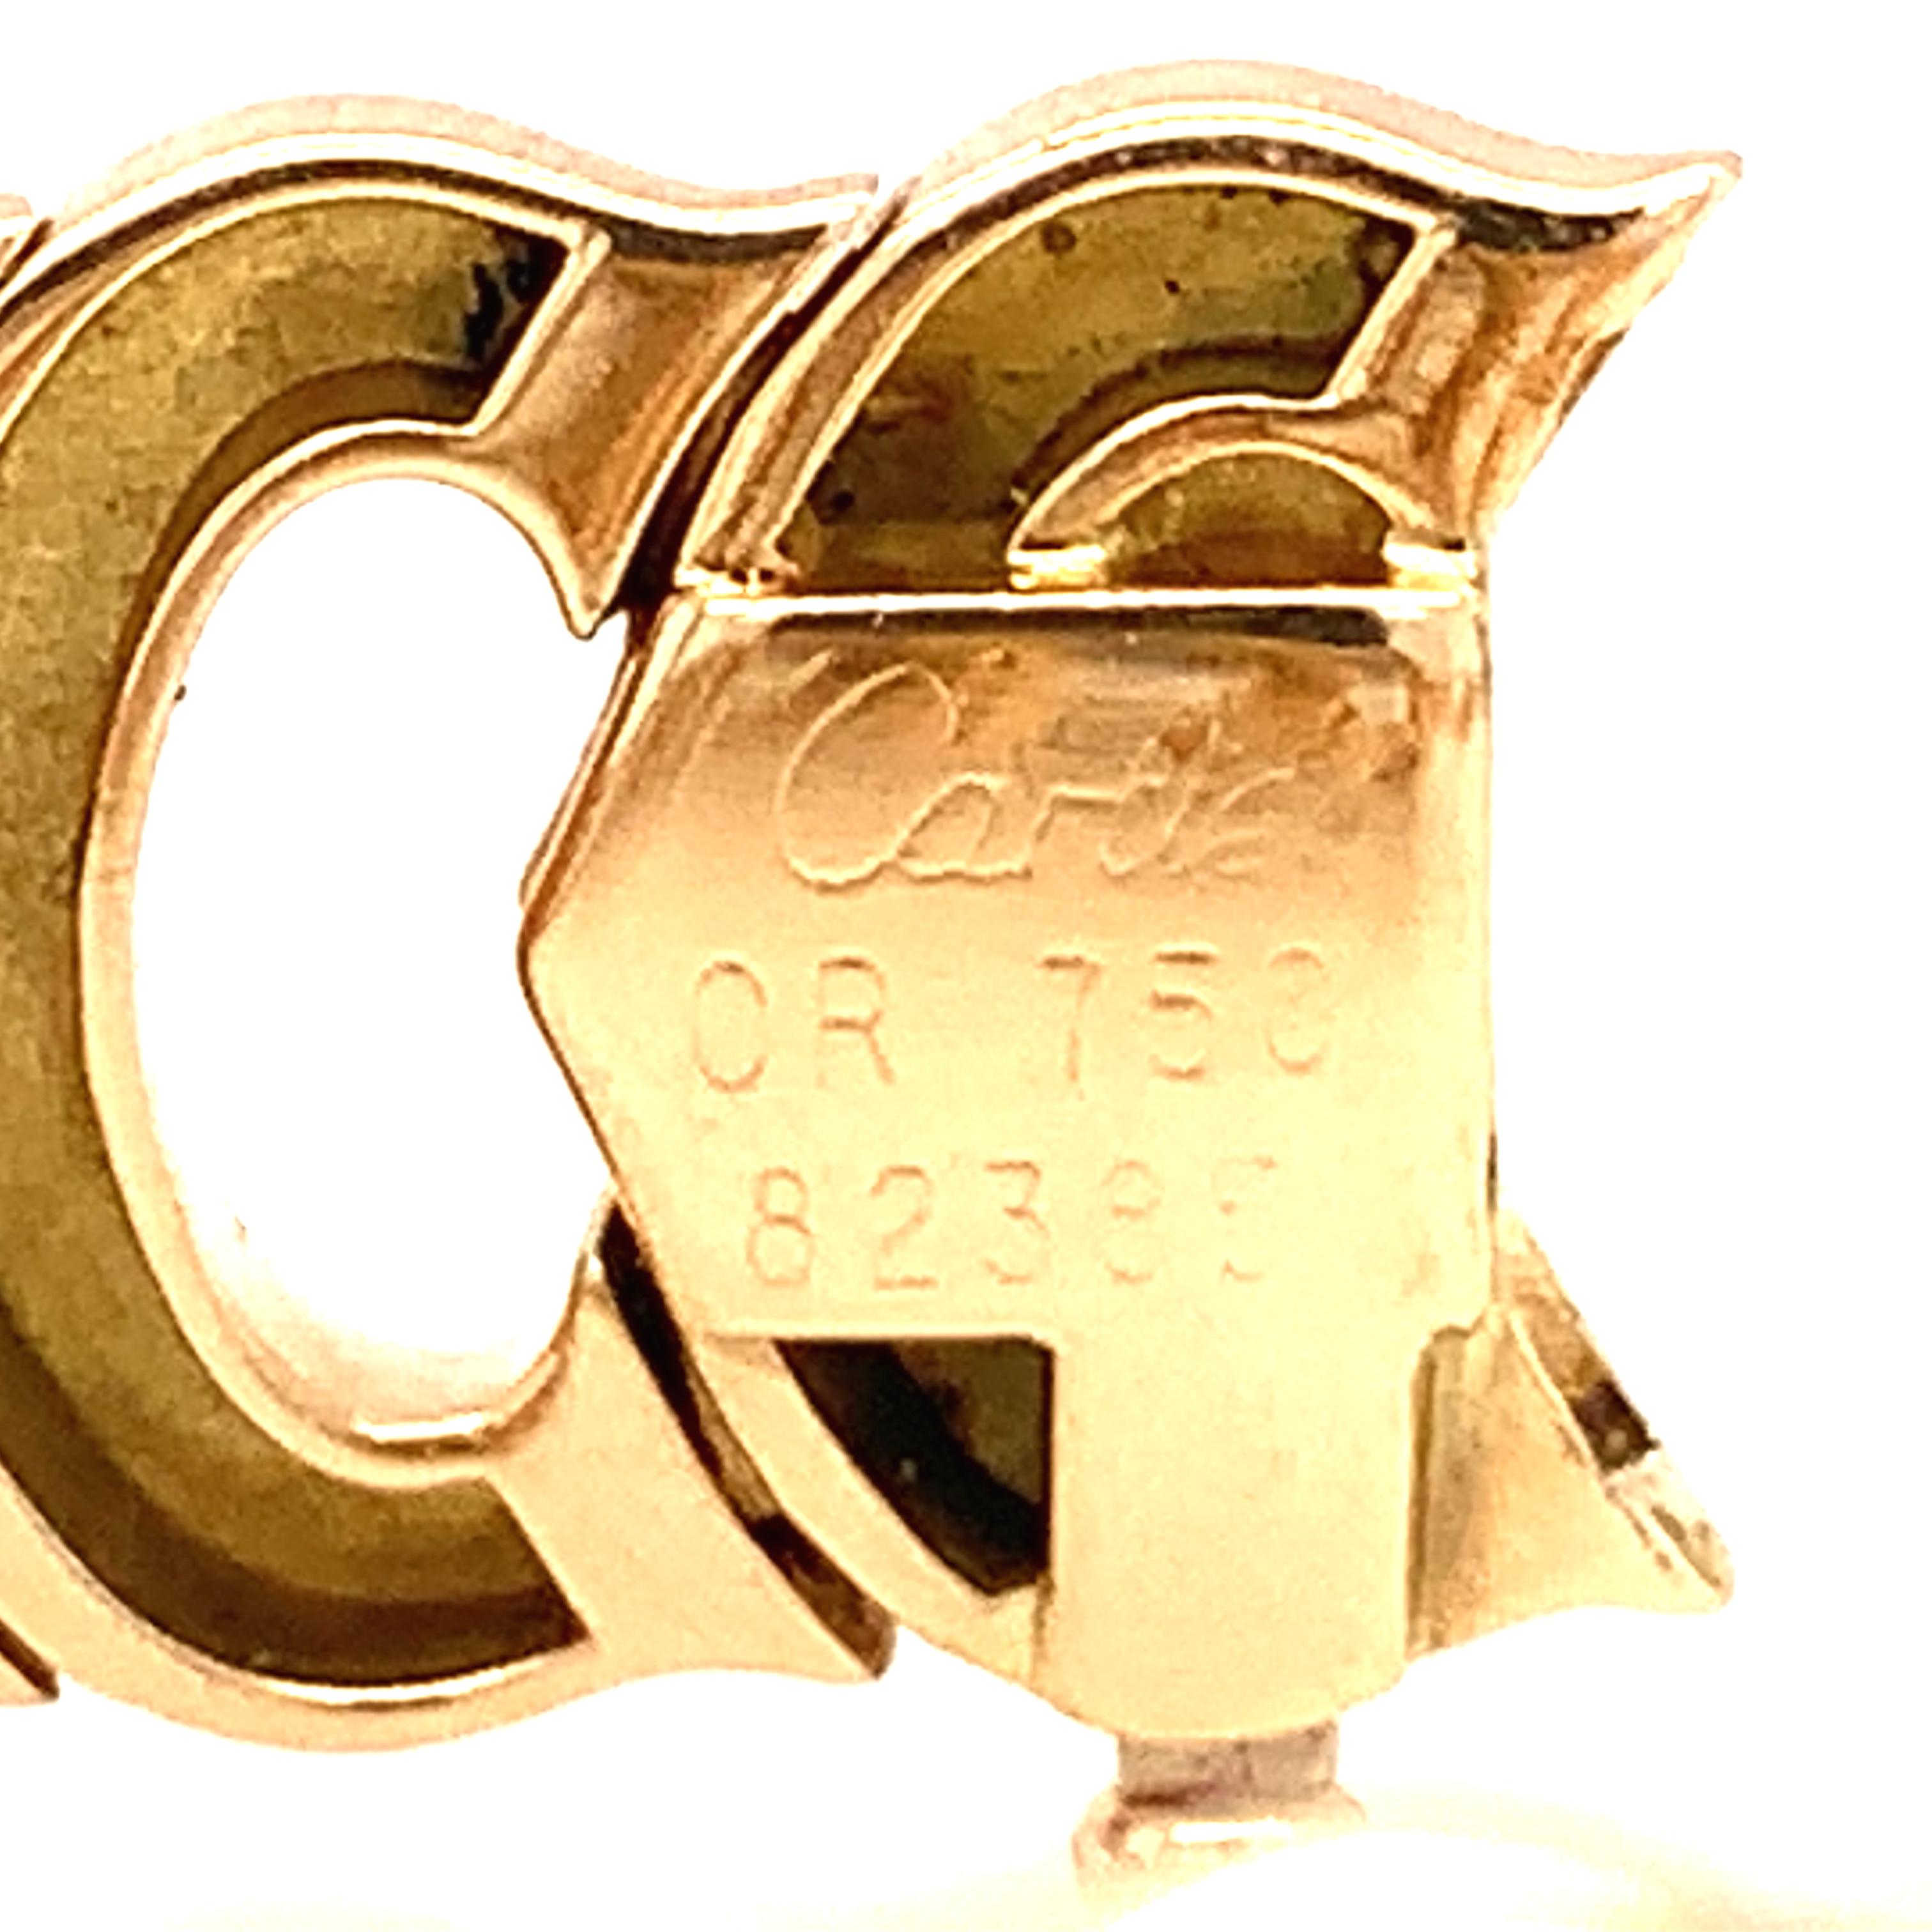 Un bracelet à maillons A.I.C. CIRCA en or jaune 18 carats mesurant 1,5 cm de large, accompagné de sa boîte d'origine Cartier, vers les années 1980. 

Immaculée, dorée, glorieuse.  

Métal : Or jaune 18K
Circa : 1980
Timbre/marque de fabrique :